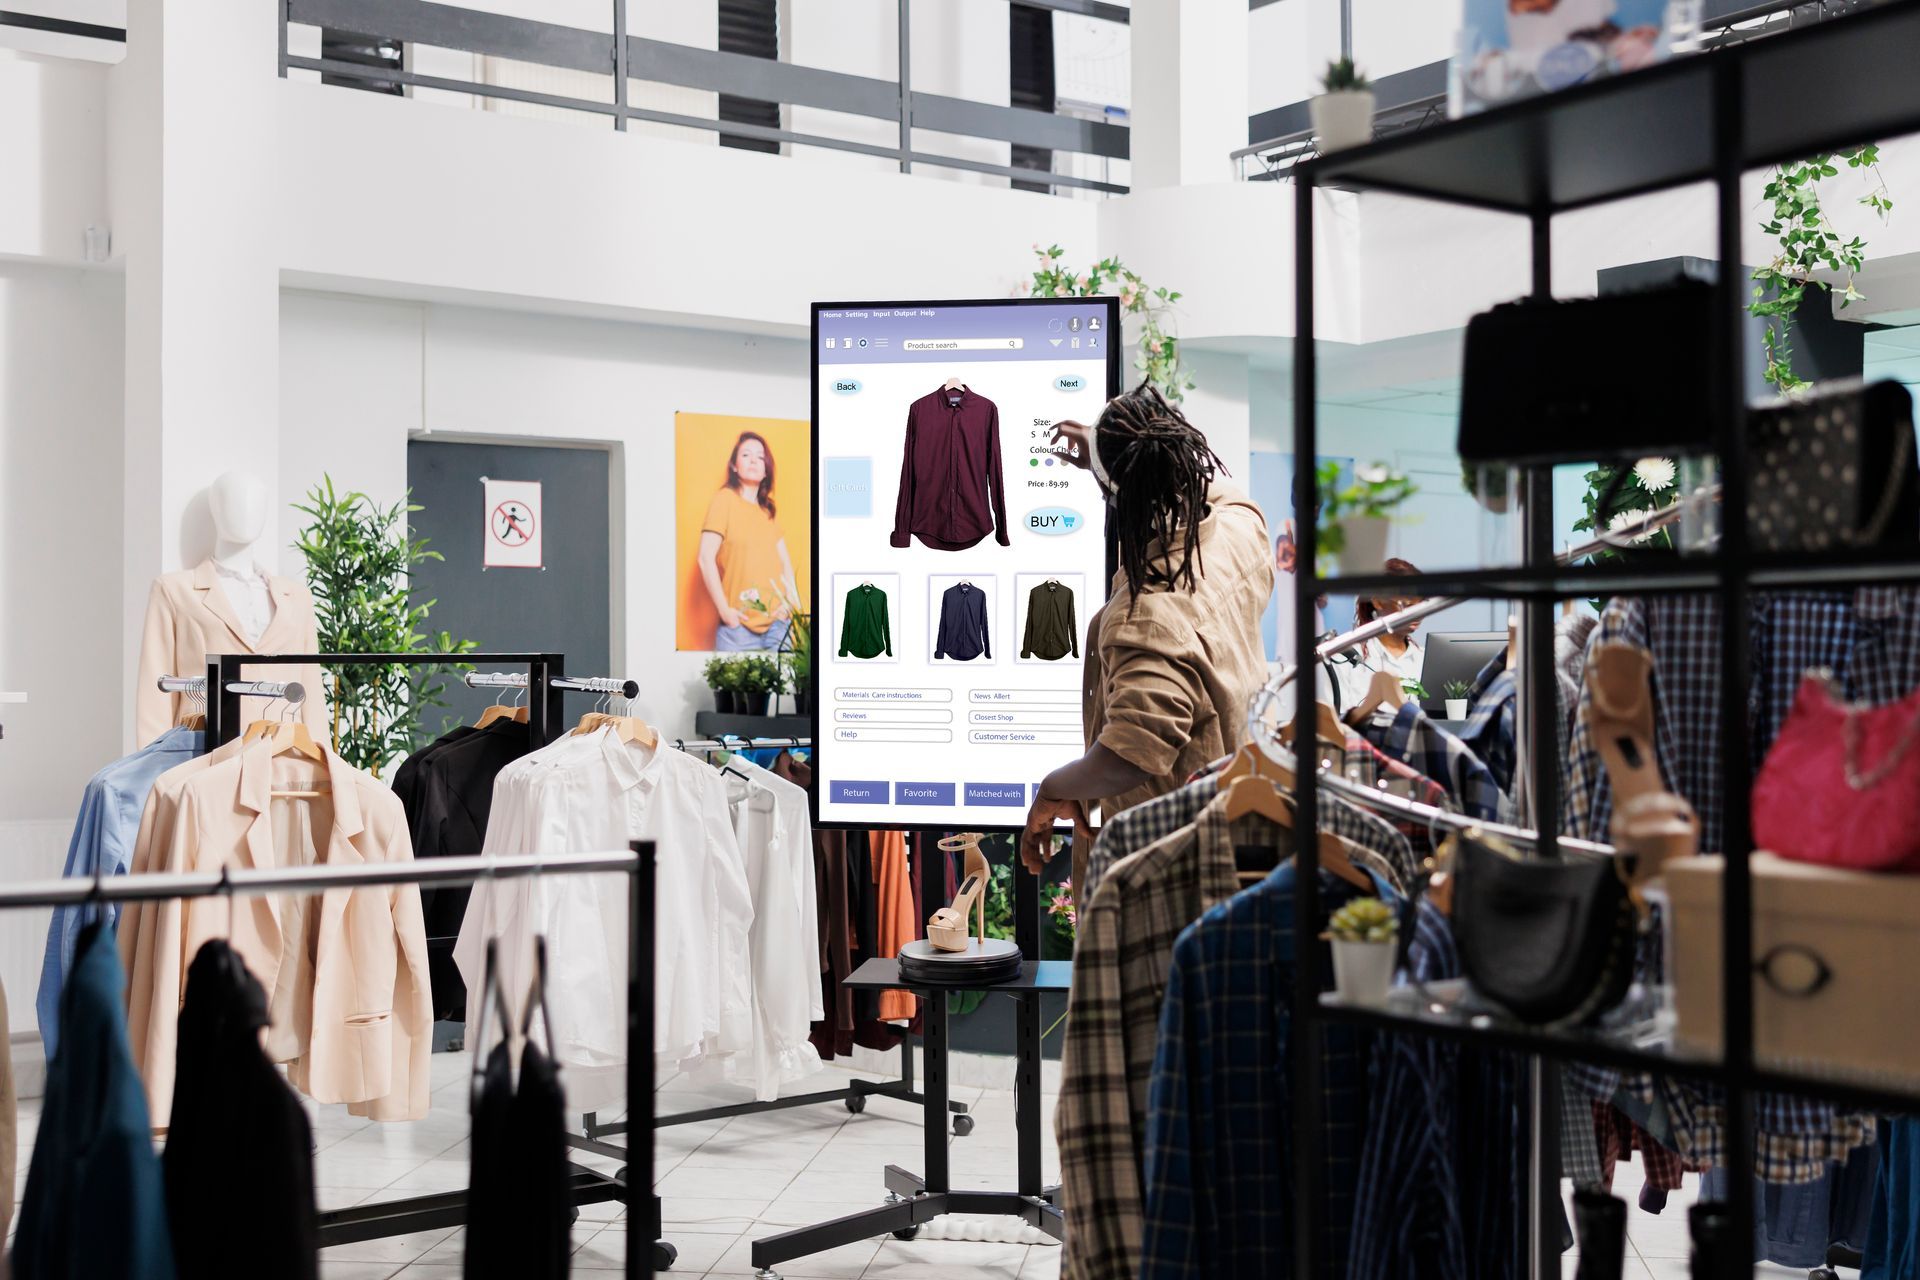 clienta usando una pantalla interactiva para locales comerciales en una tienda 